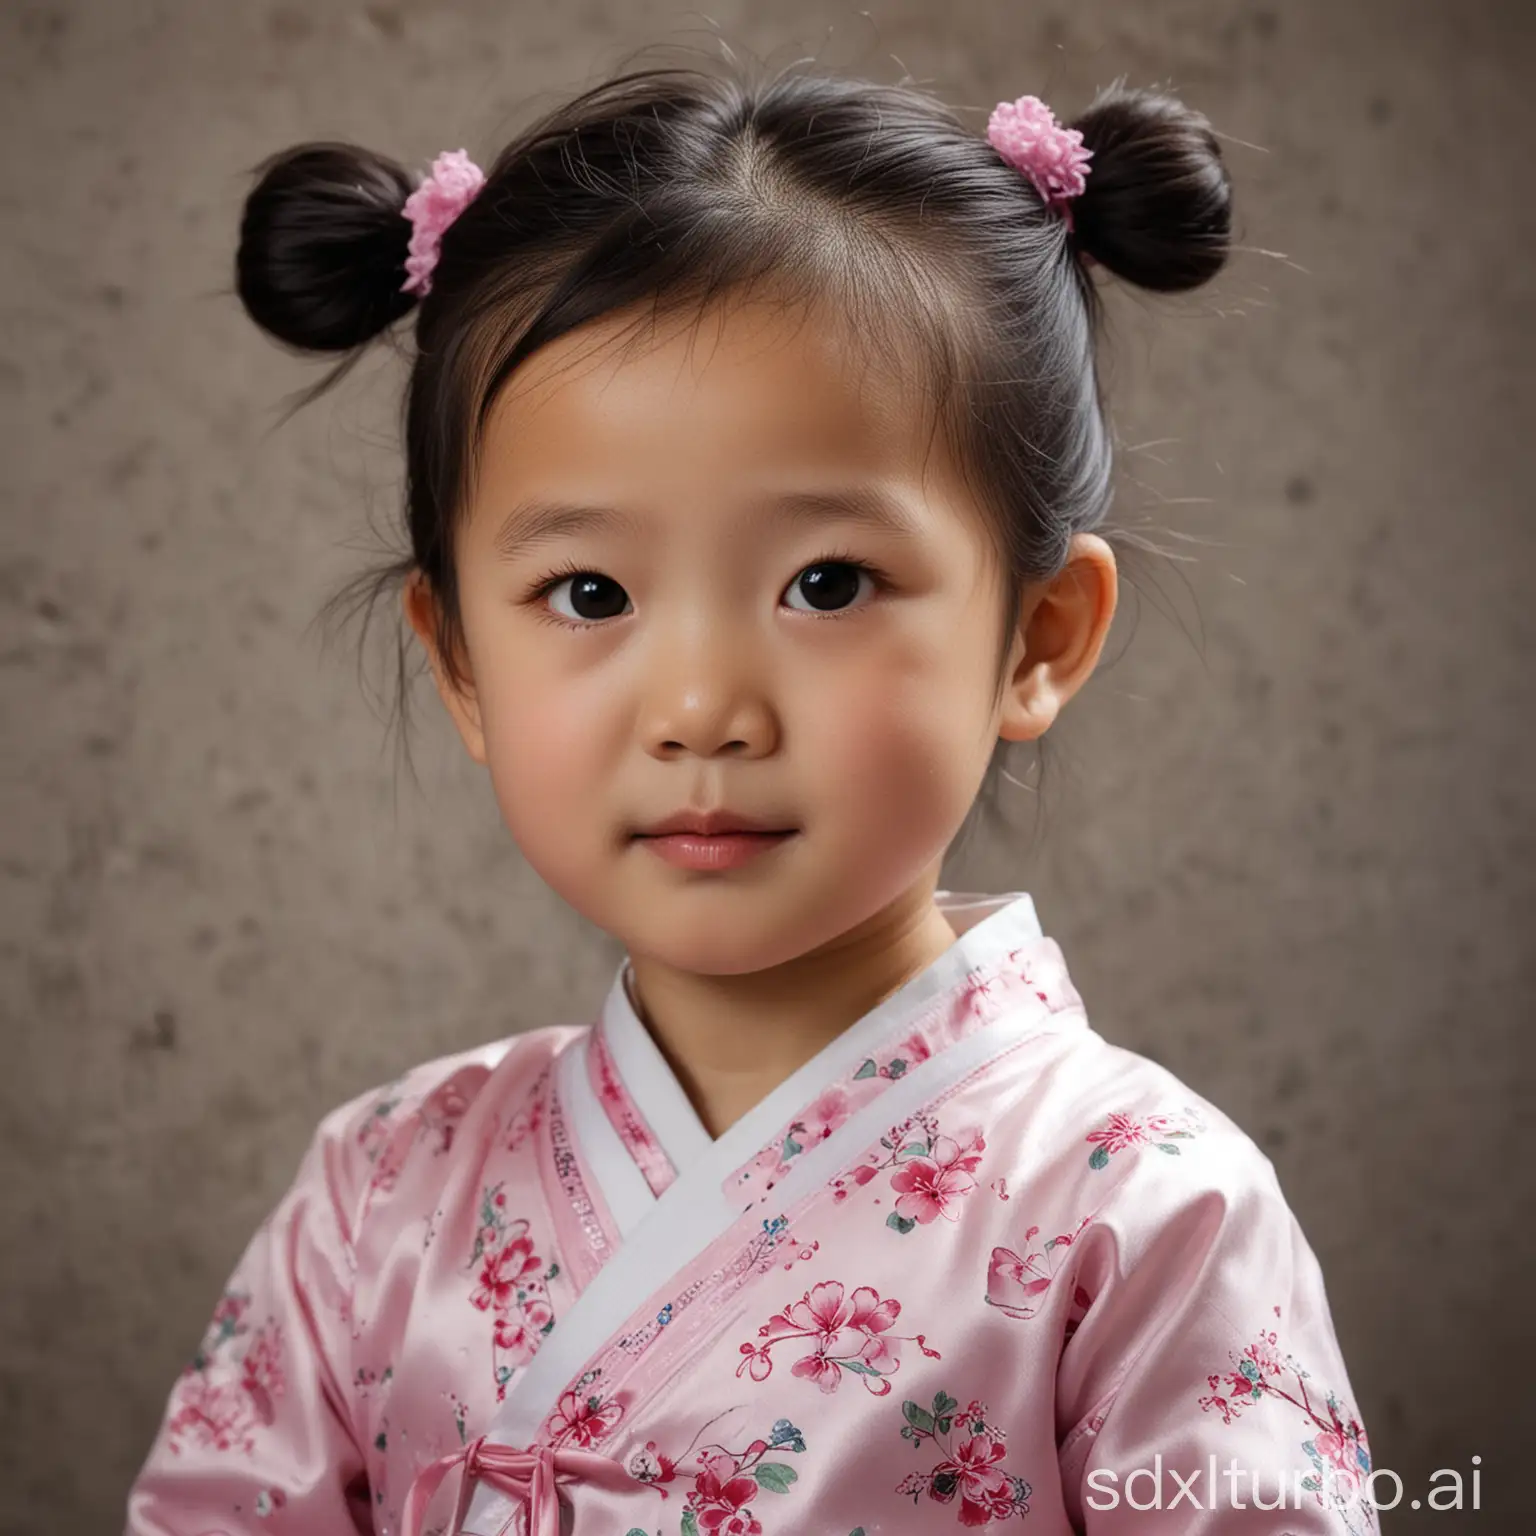 一个中国小女孩